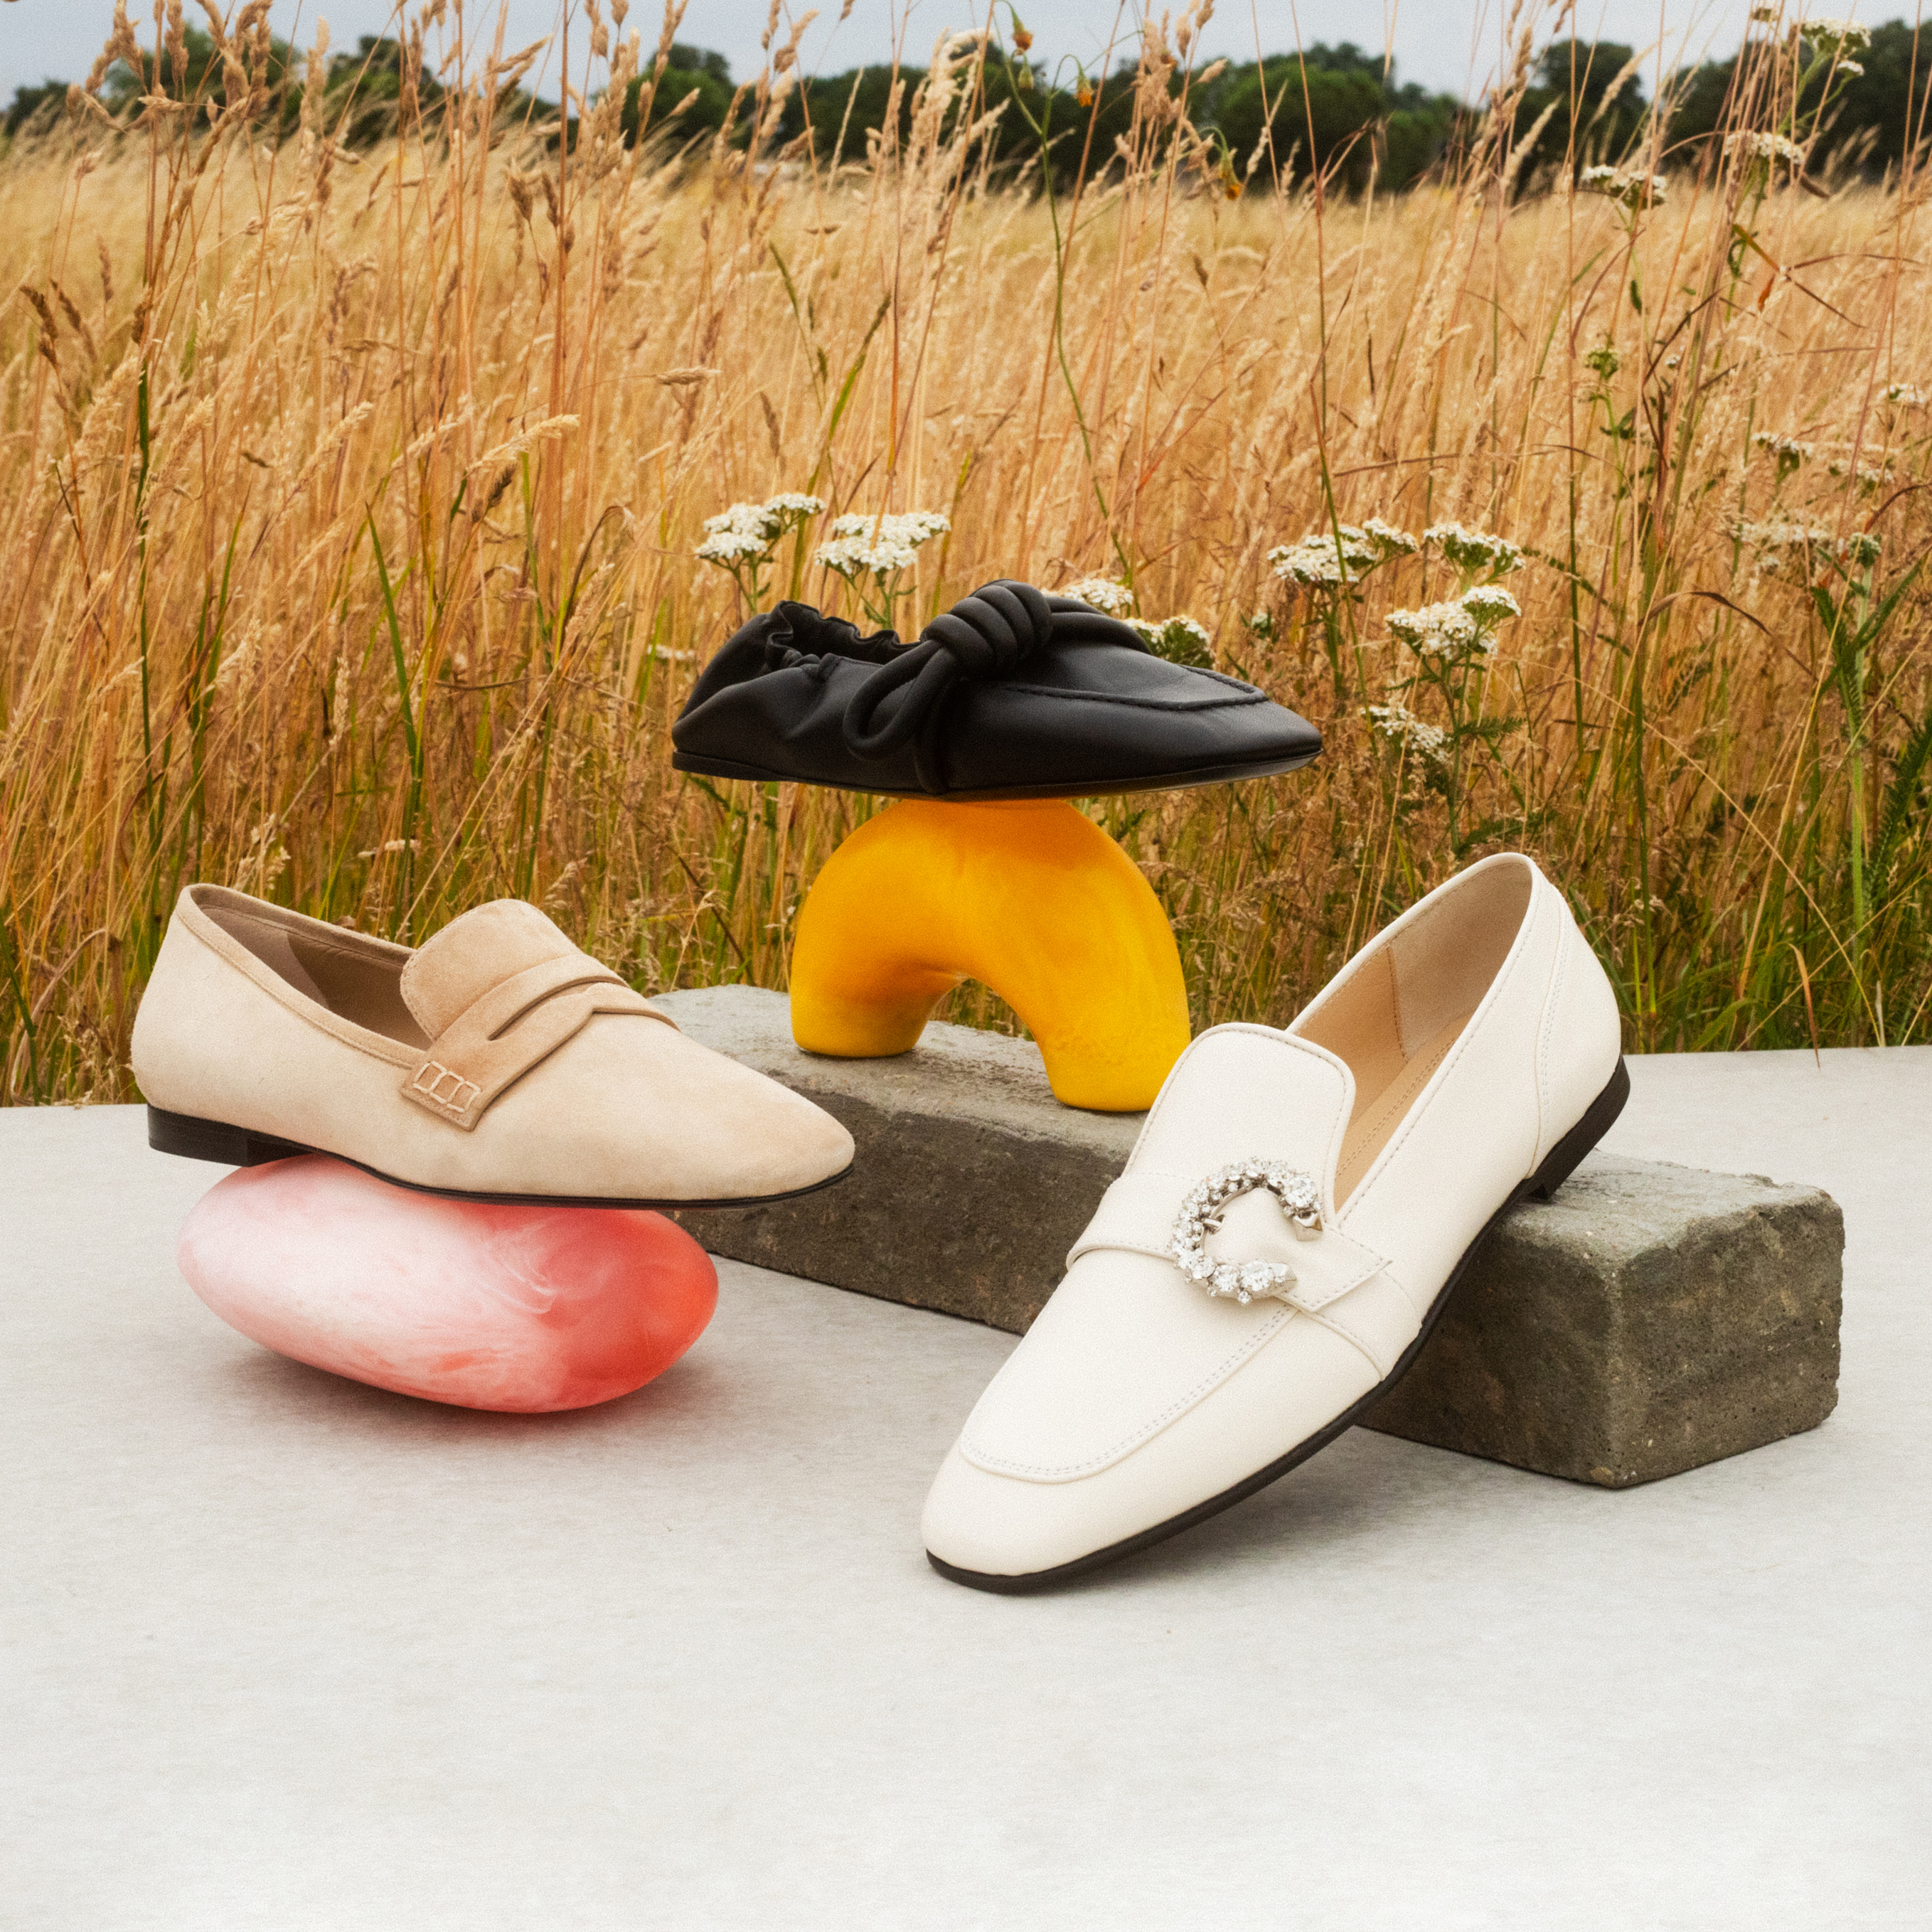 Best Loafers For Women 2021: The Designer | PORTER